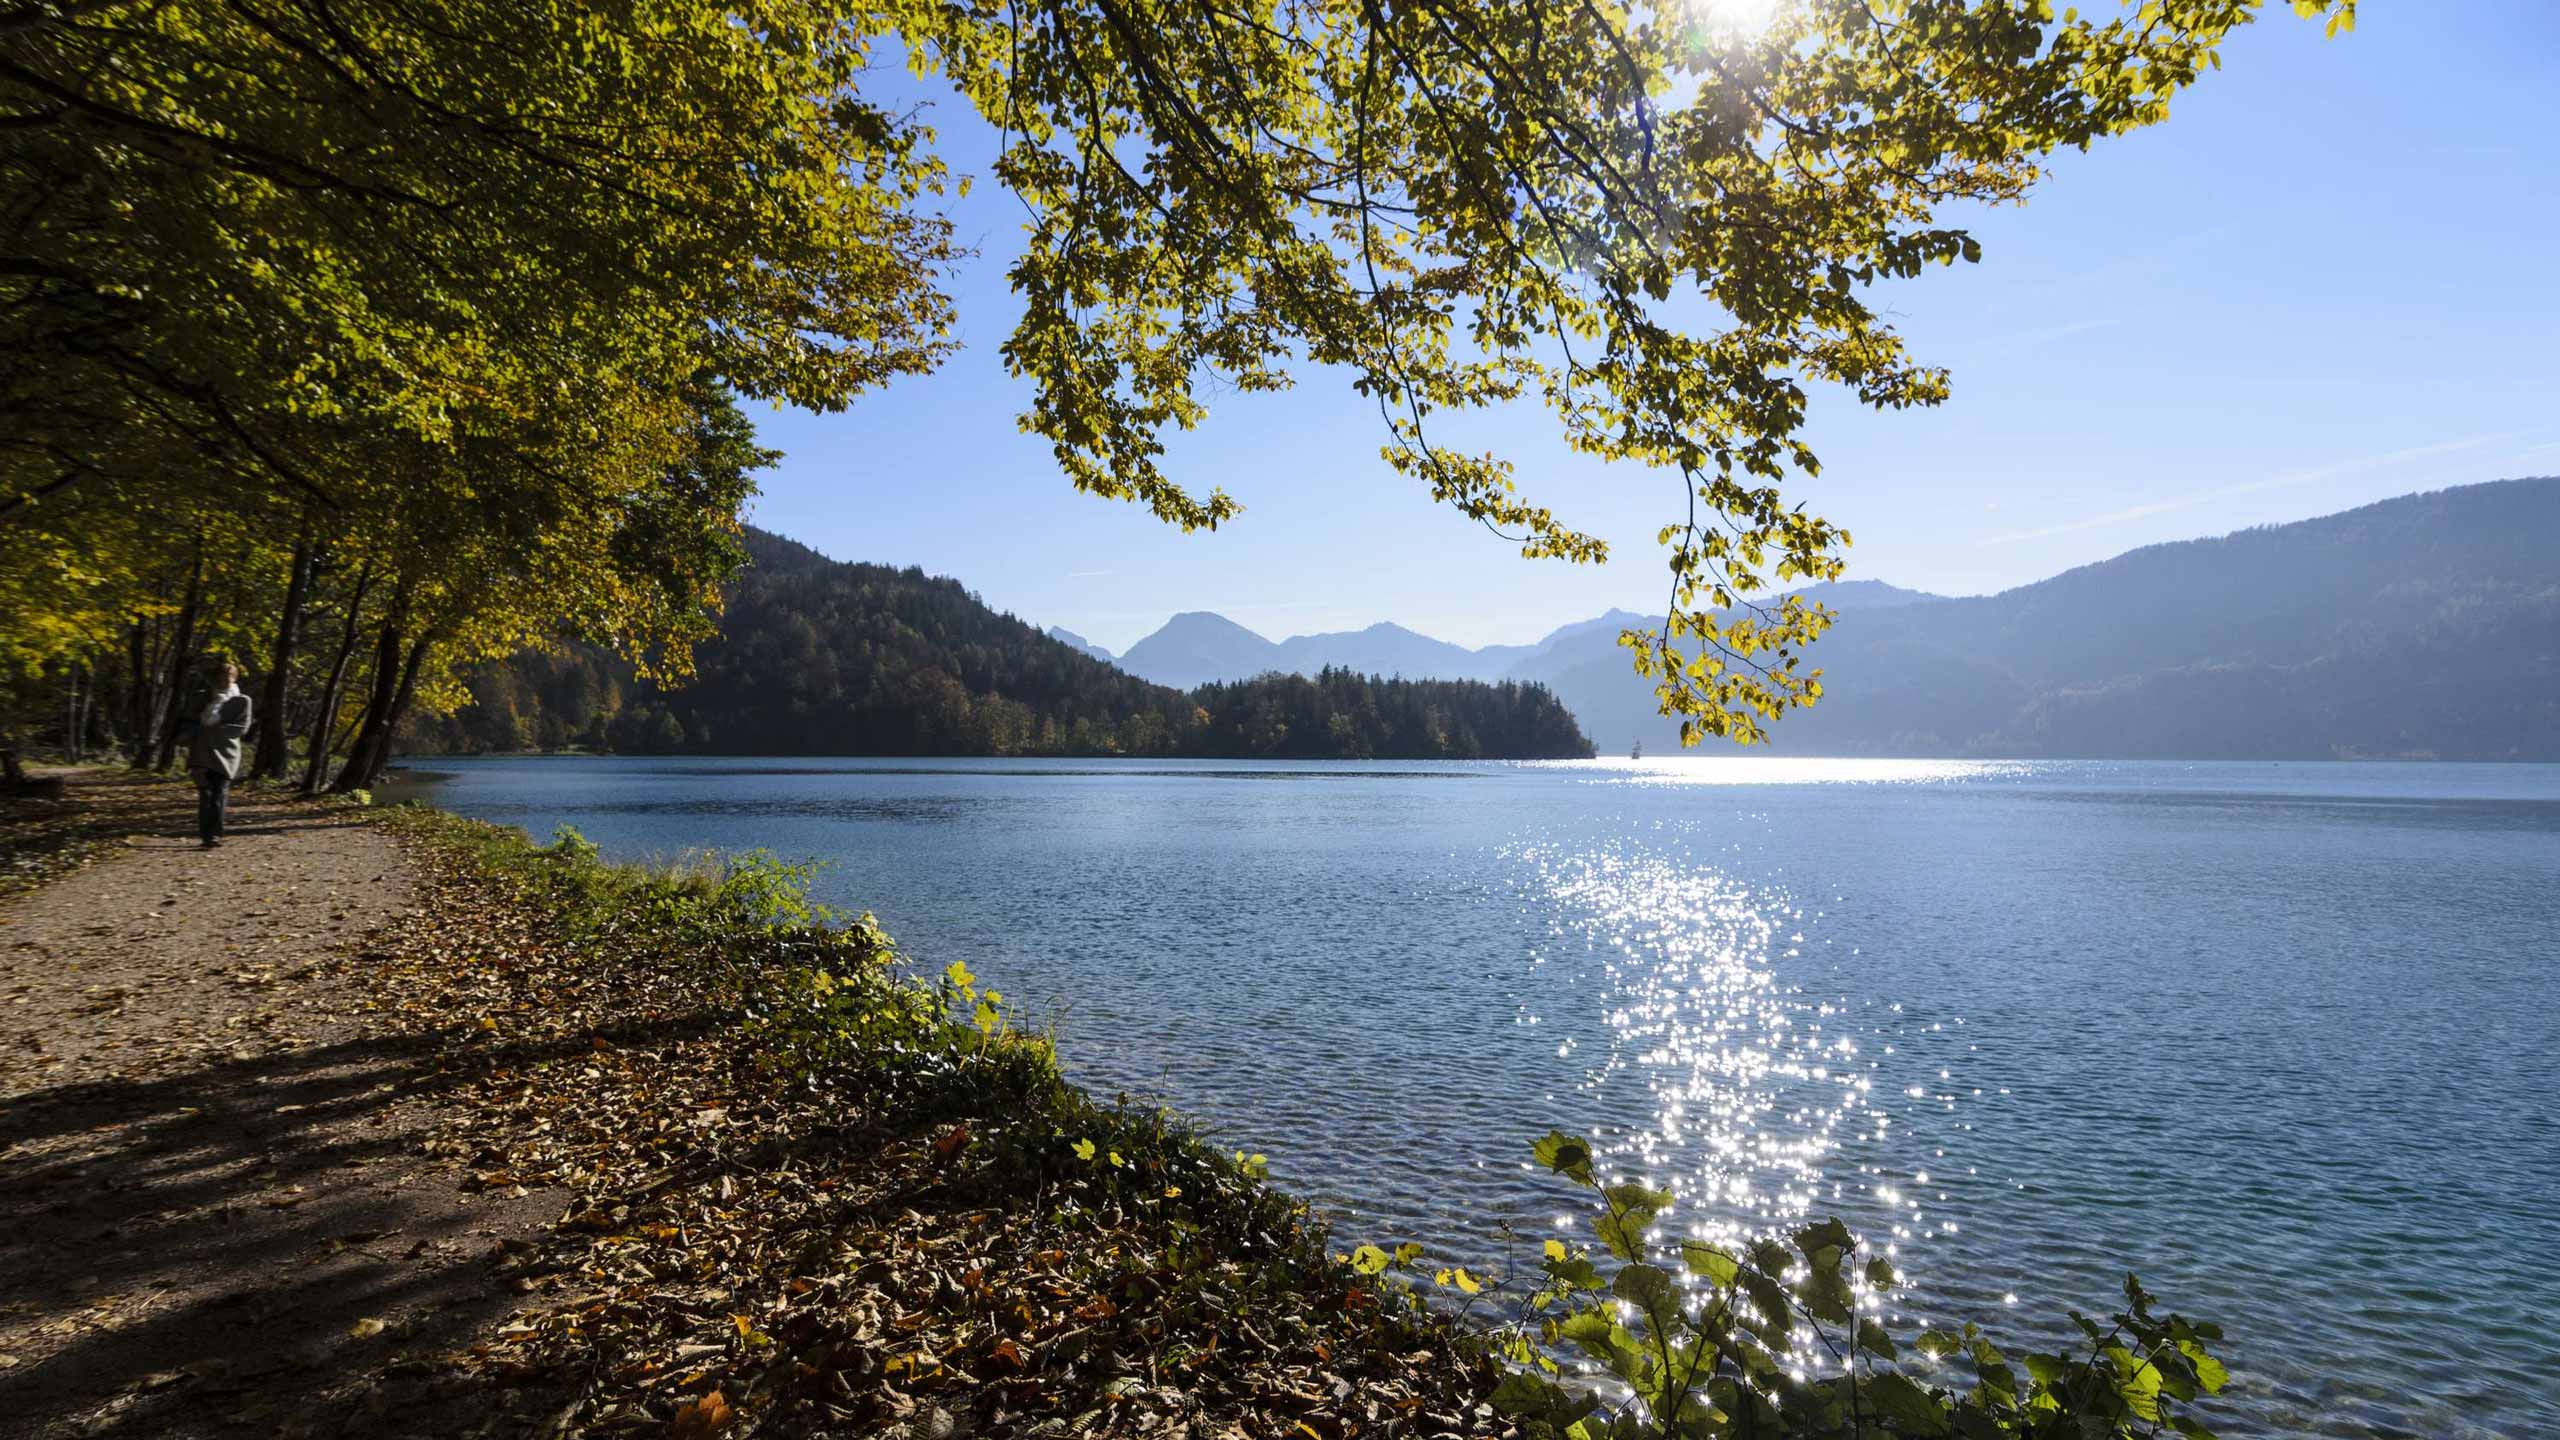 Lake Wolfgang in autumn